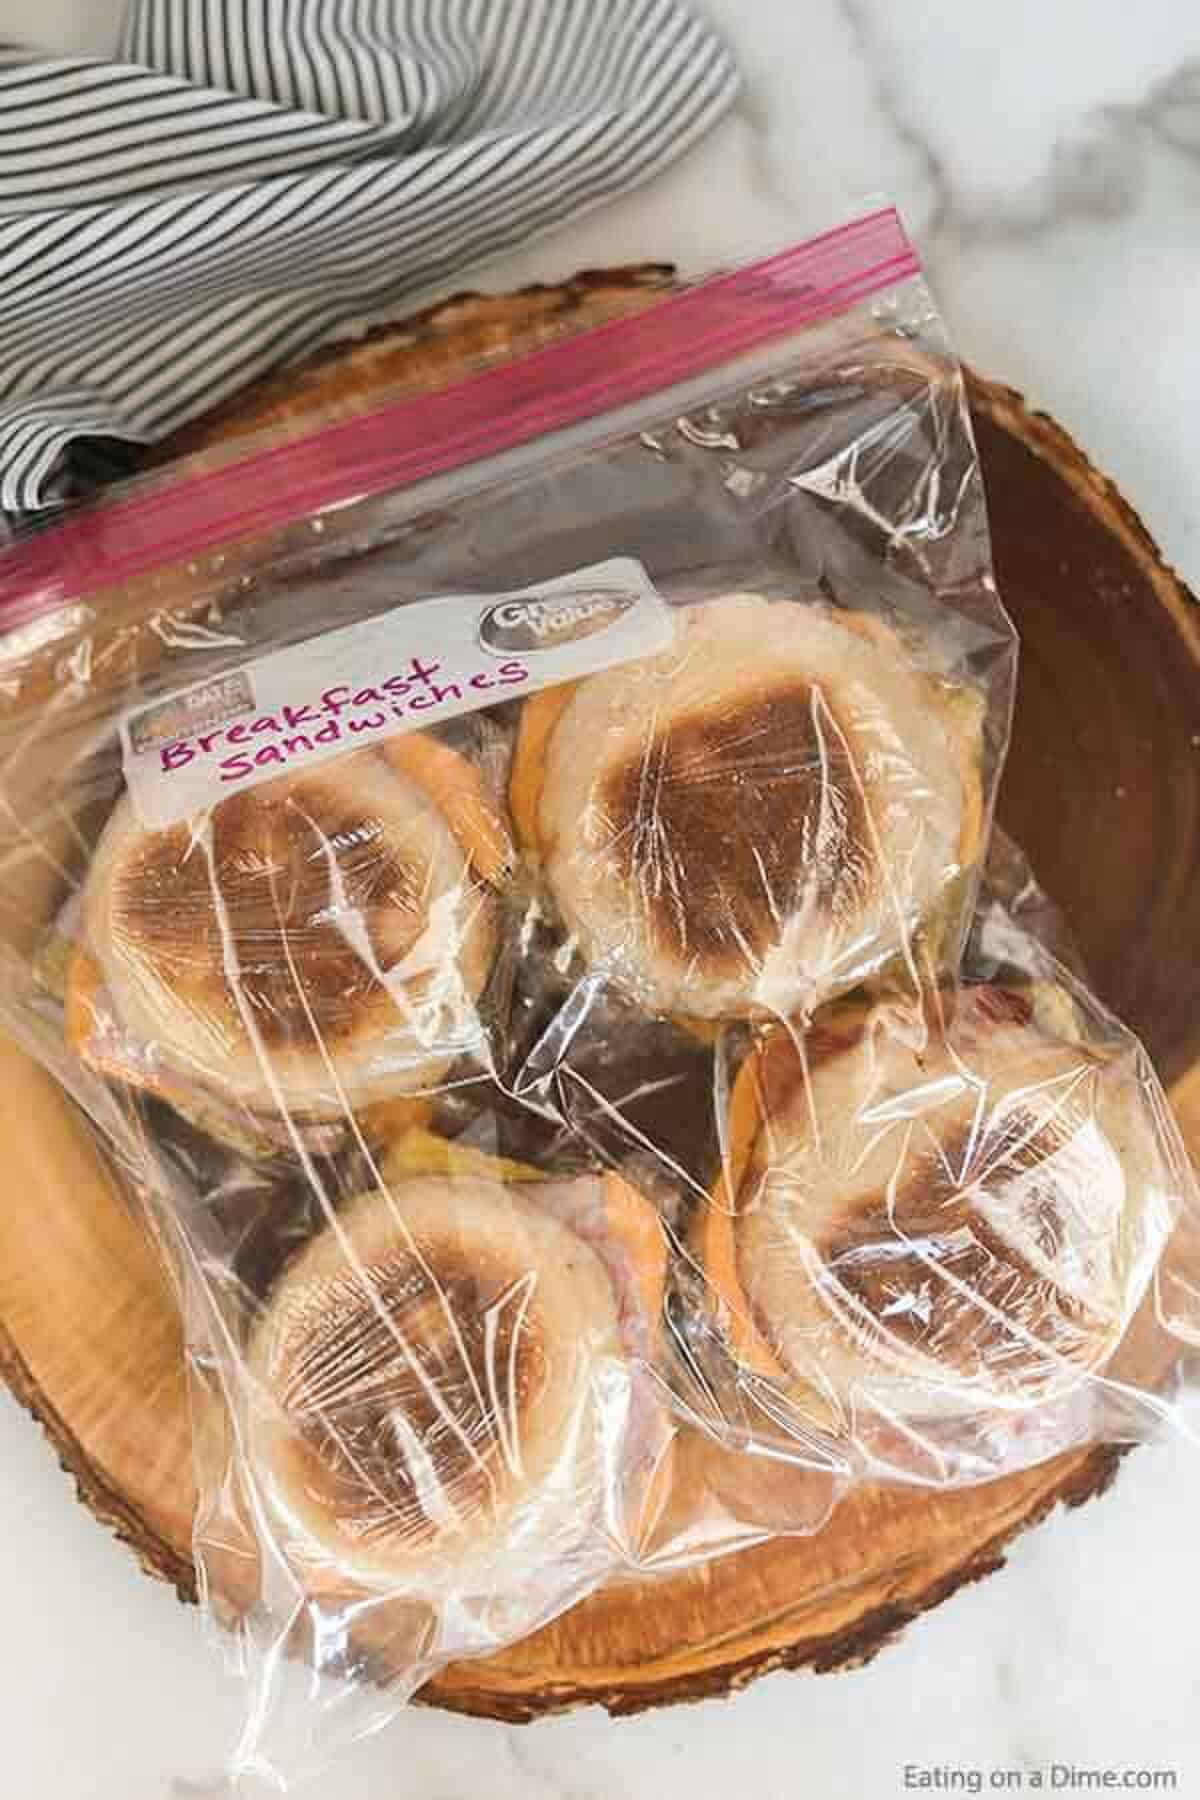 Breakfast Sandwiches placed in a ziplock freezer bag